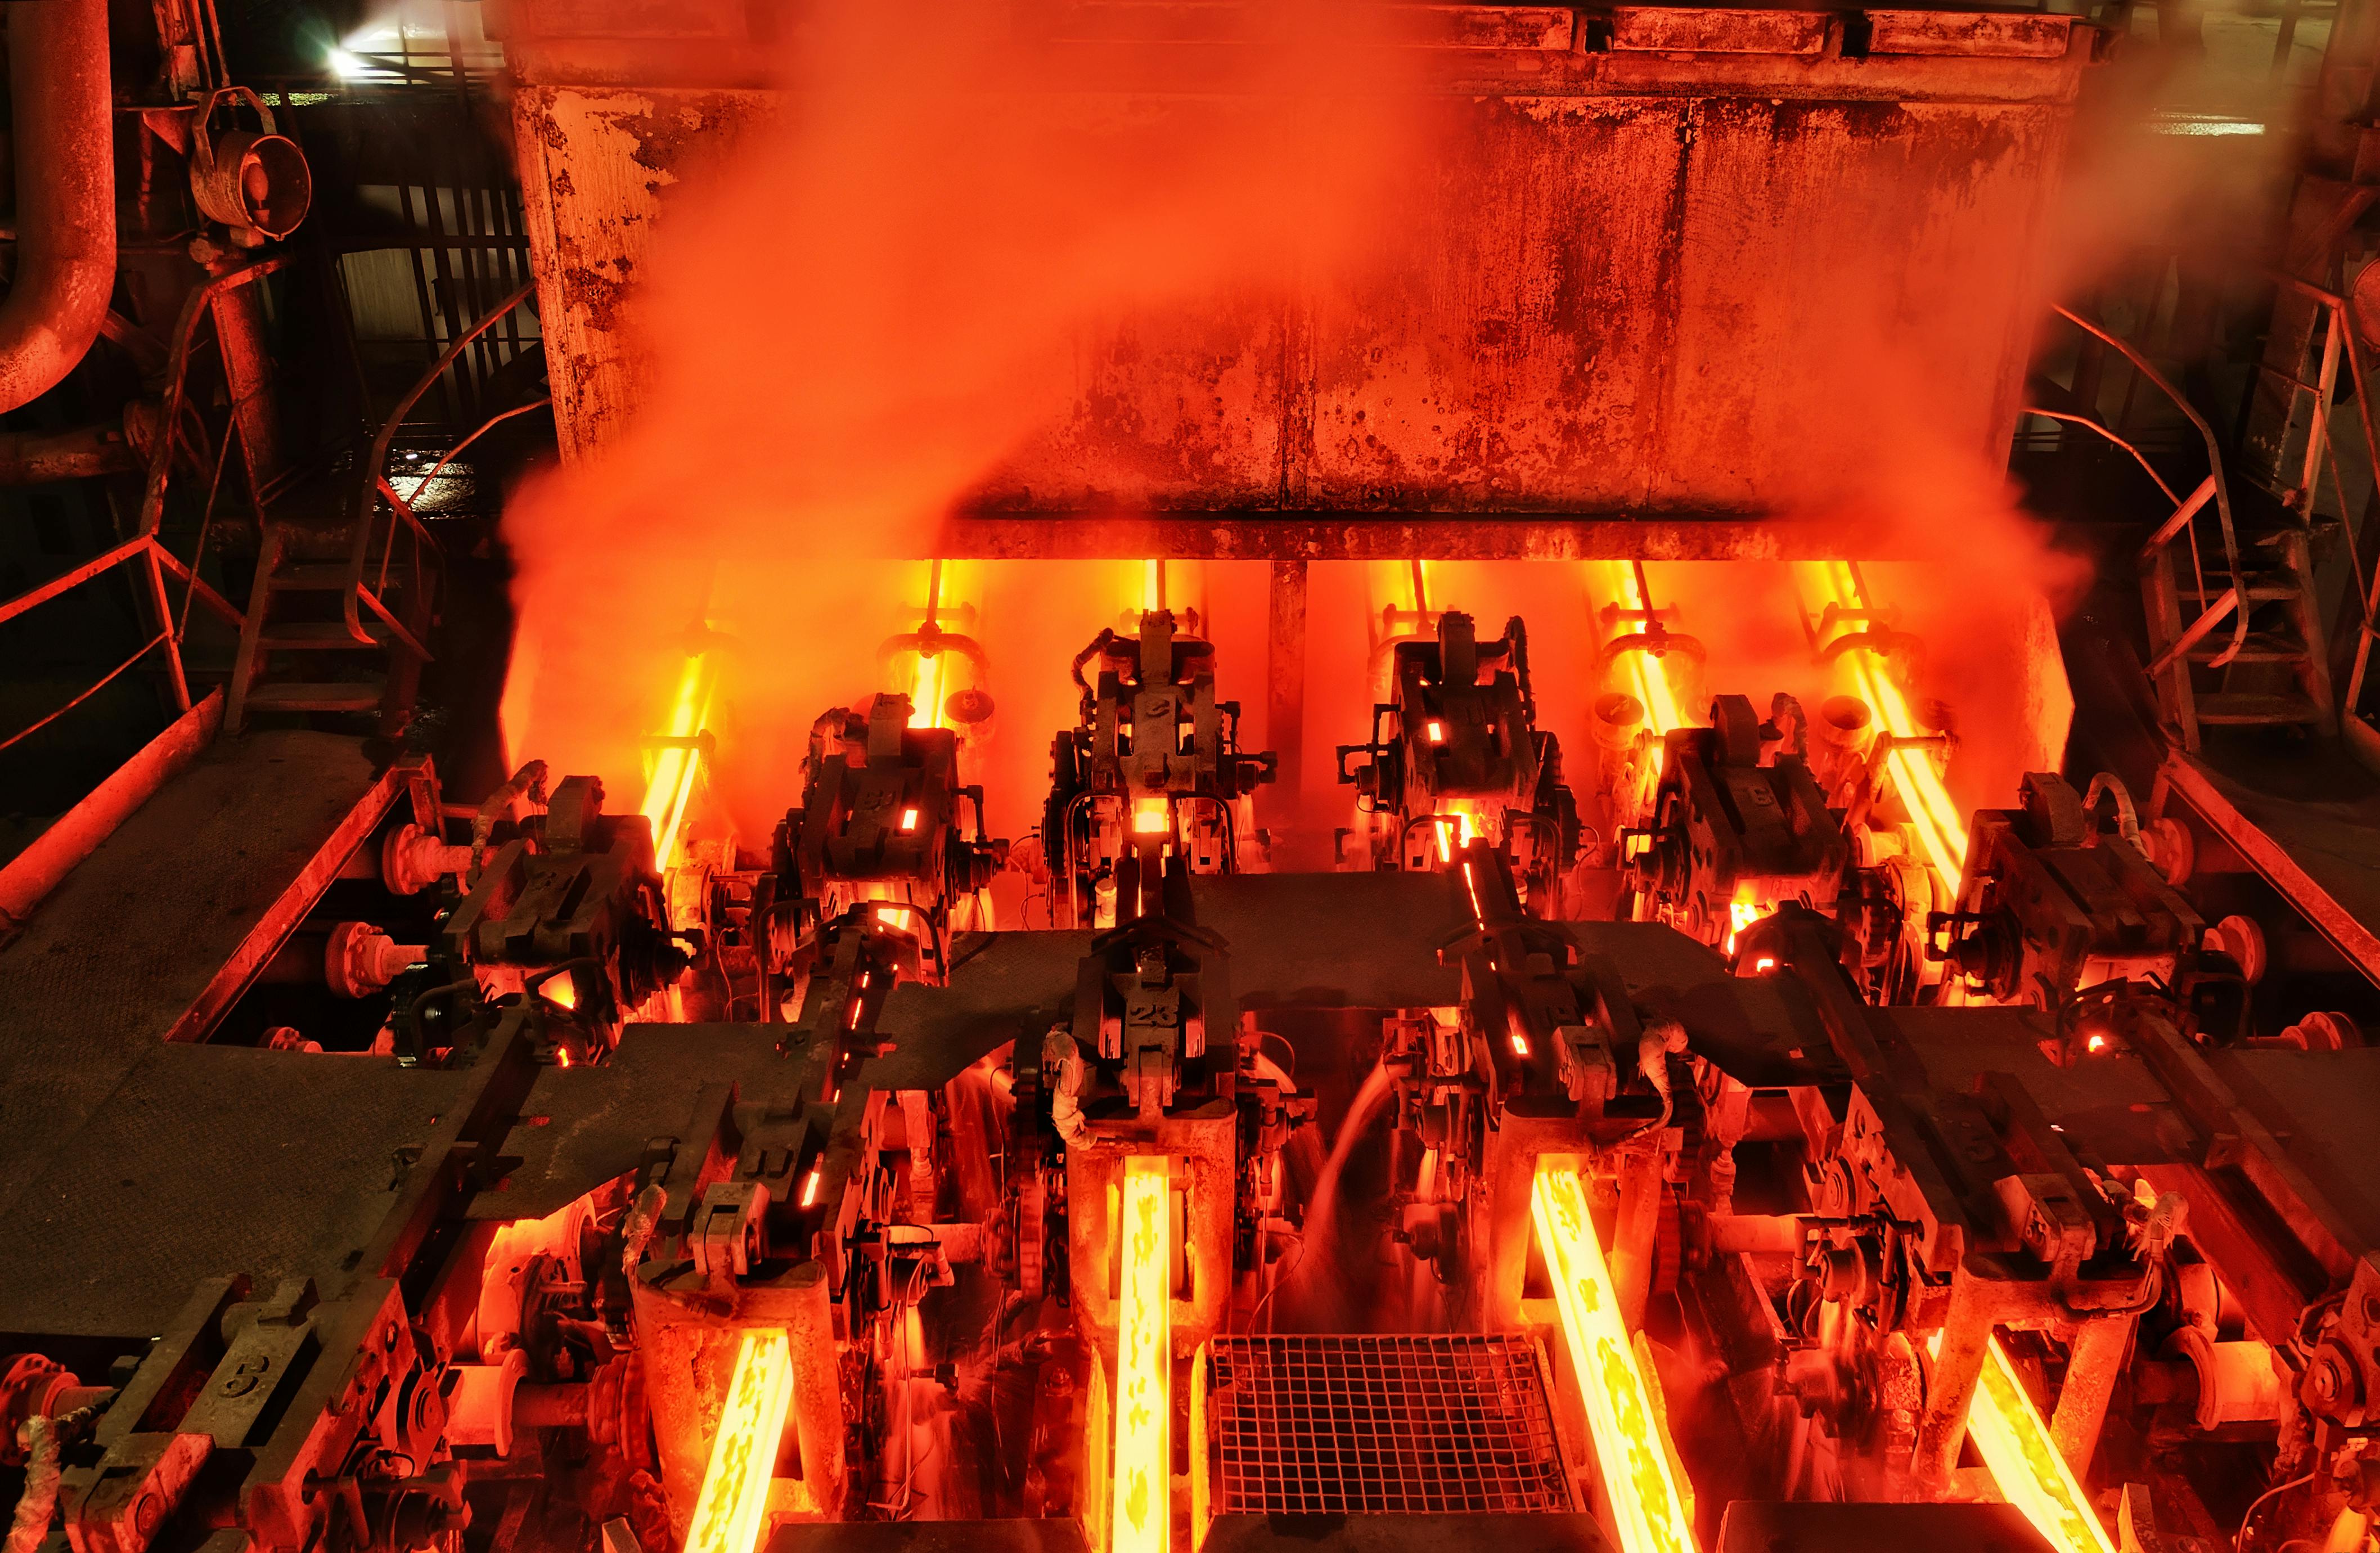 Metallurgical plant continuous casting machine managing heat flow